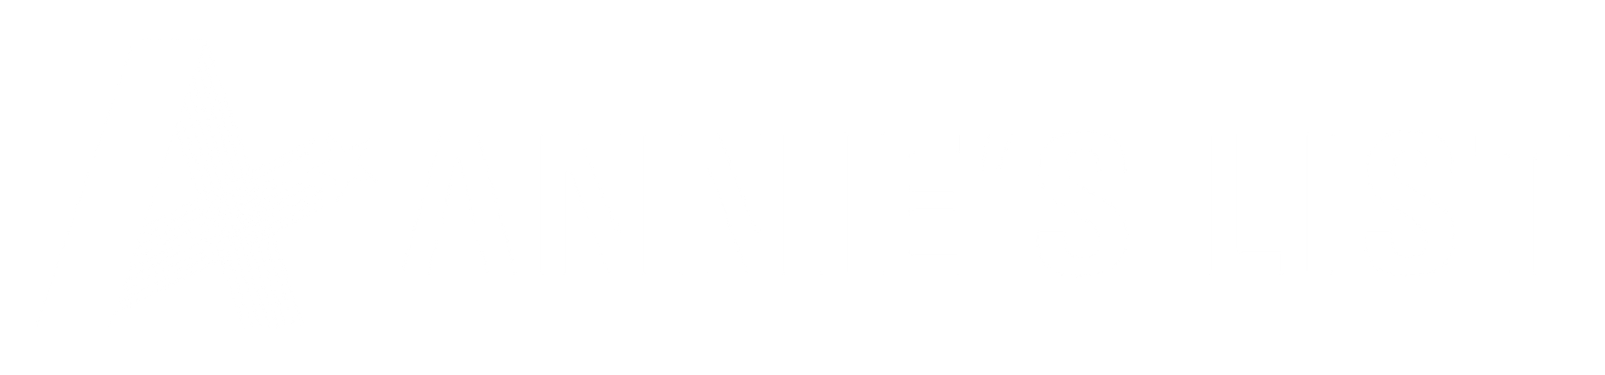 Annies List Logo